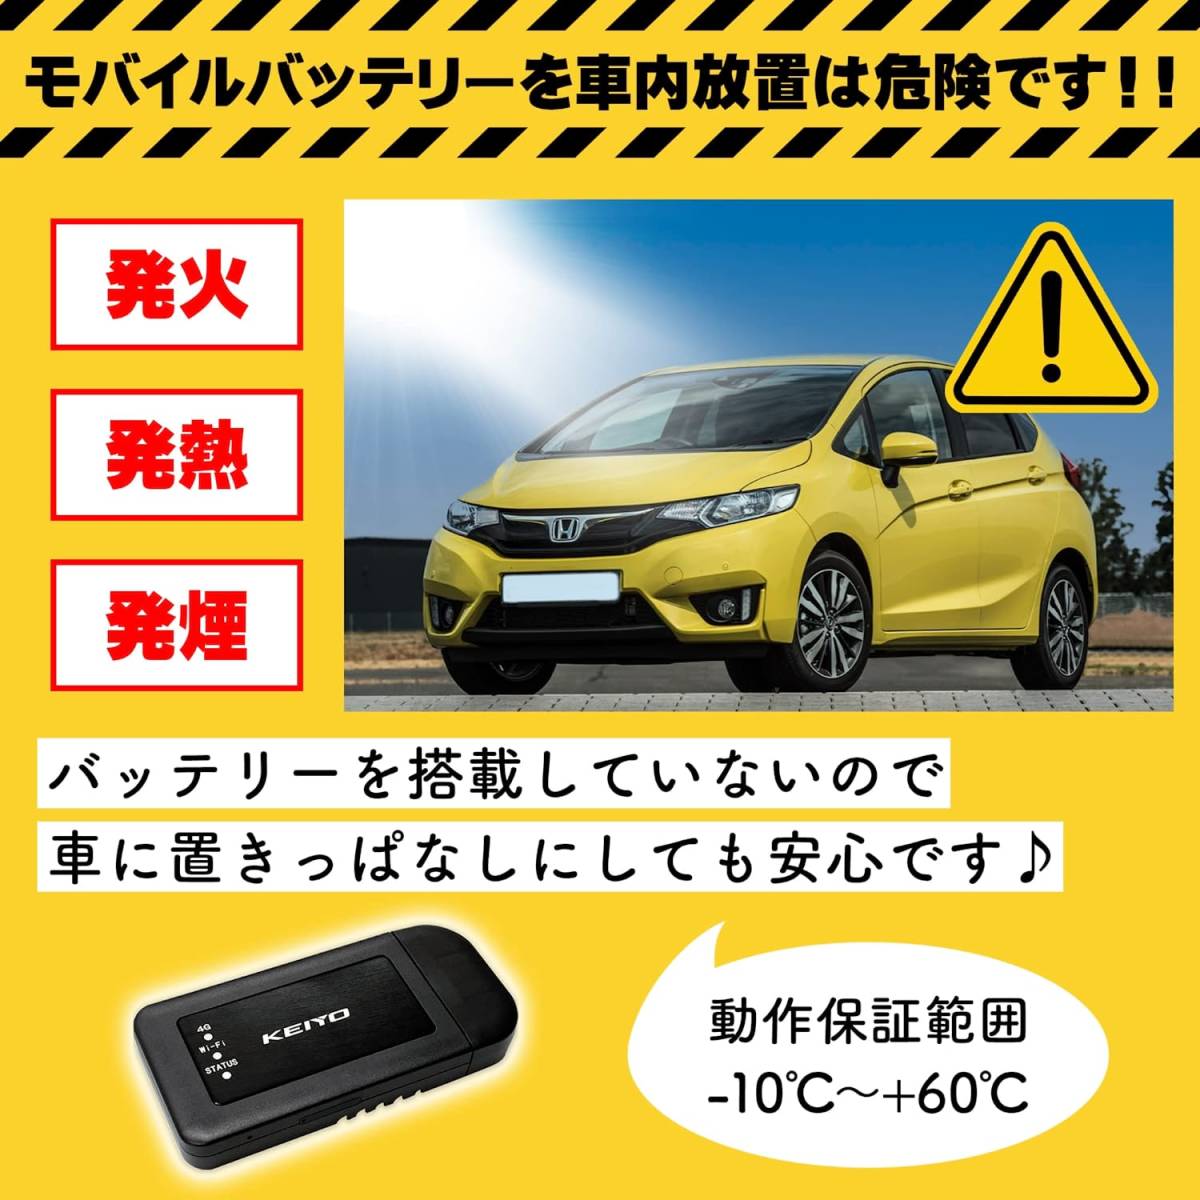 KEIYO автомобильный мобильный маршрутизатор простой установка USB источник питания . в любое время везде можно использовать AN-S092... новый товар не использовался товар 